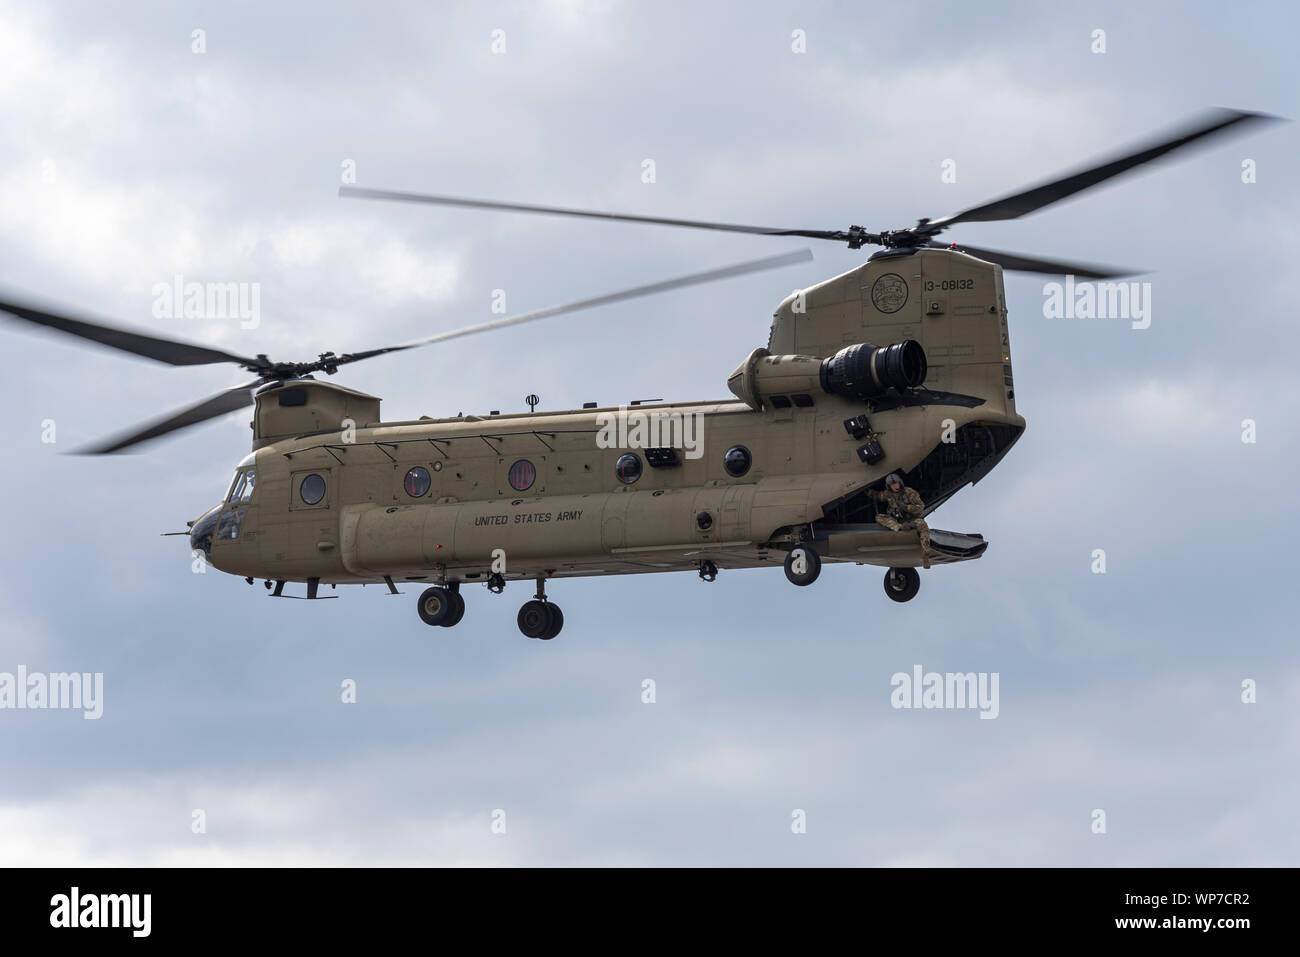 US Army Boeing CH-47F elicottero Chinook in atterraggio a difesa della sicurezza & Equipment International DSEI arms fair trade show, Excel, London, Regno Unito. Crewman Foto Stock